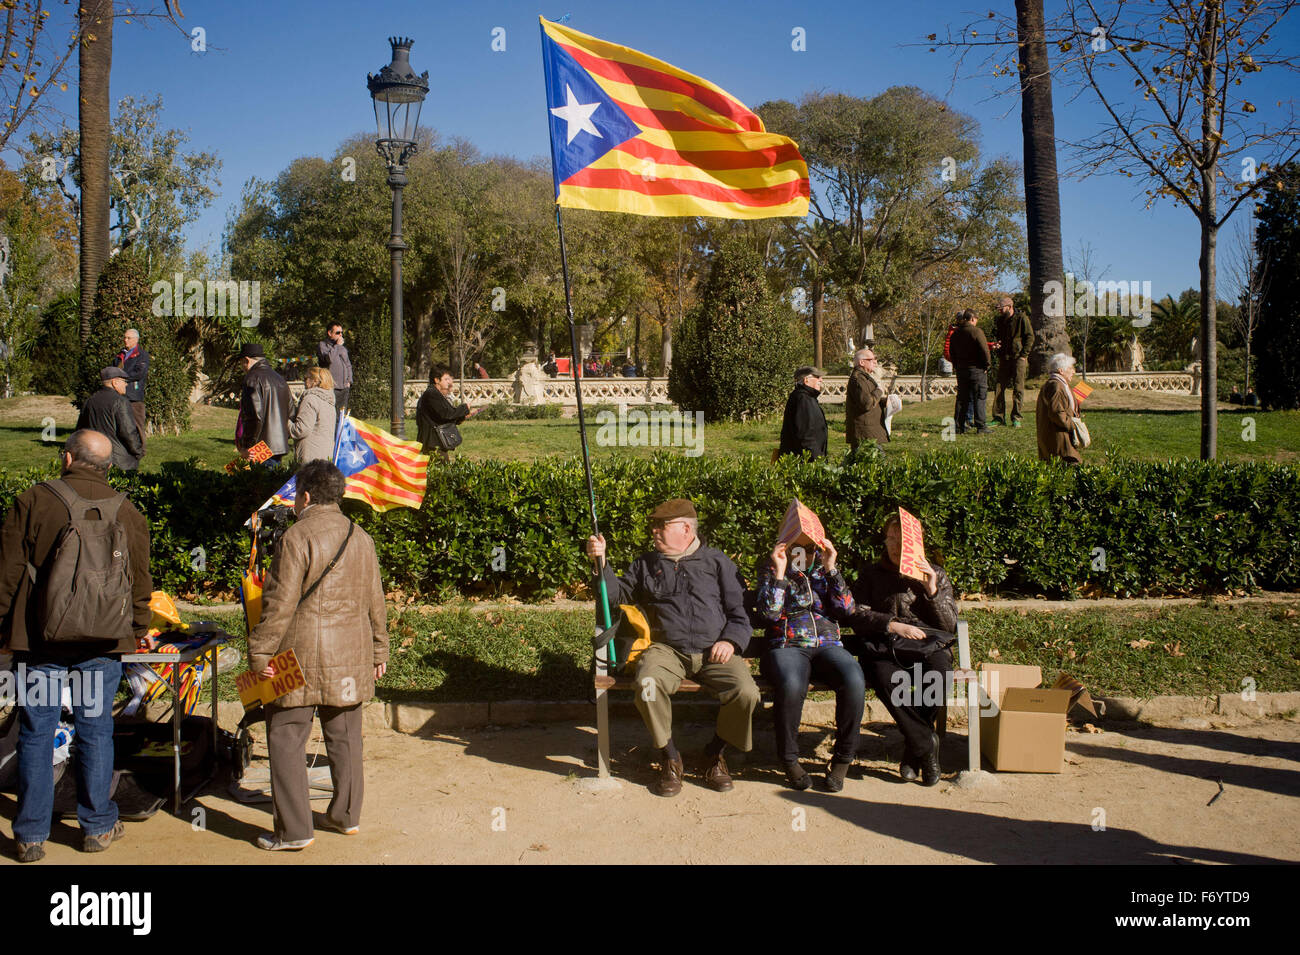 Barcelone, Catalogne, Espagne. 22 Nov, 2015. En ce dimanche ensoleillé a hommes détient un ESTELADA Drapeau (symbole de l'indépendance catalane) au Parc de la Ciutadella de Barcelone, Espagne, le 22 novembre, 2015. Plus de trois mille personnes se sont rassemblées dans le Parc de la Ciutadella à Barcelone exigeant un accord entre les deux partis indépendantistes dans le Parlement Catalan (Pel Junts tr et cuvette). L'impossibilité d'élire un président pour le Parlement Catalan a bloqué le processus d'indépendance. Crédit : Jordi Boixareu/ZUMA/Alamy Fil Live News Banque D'Images